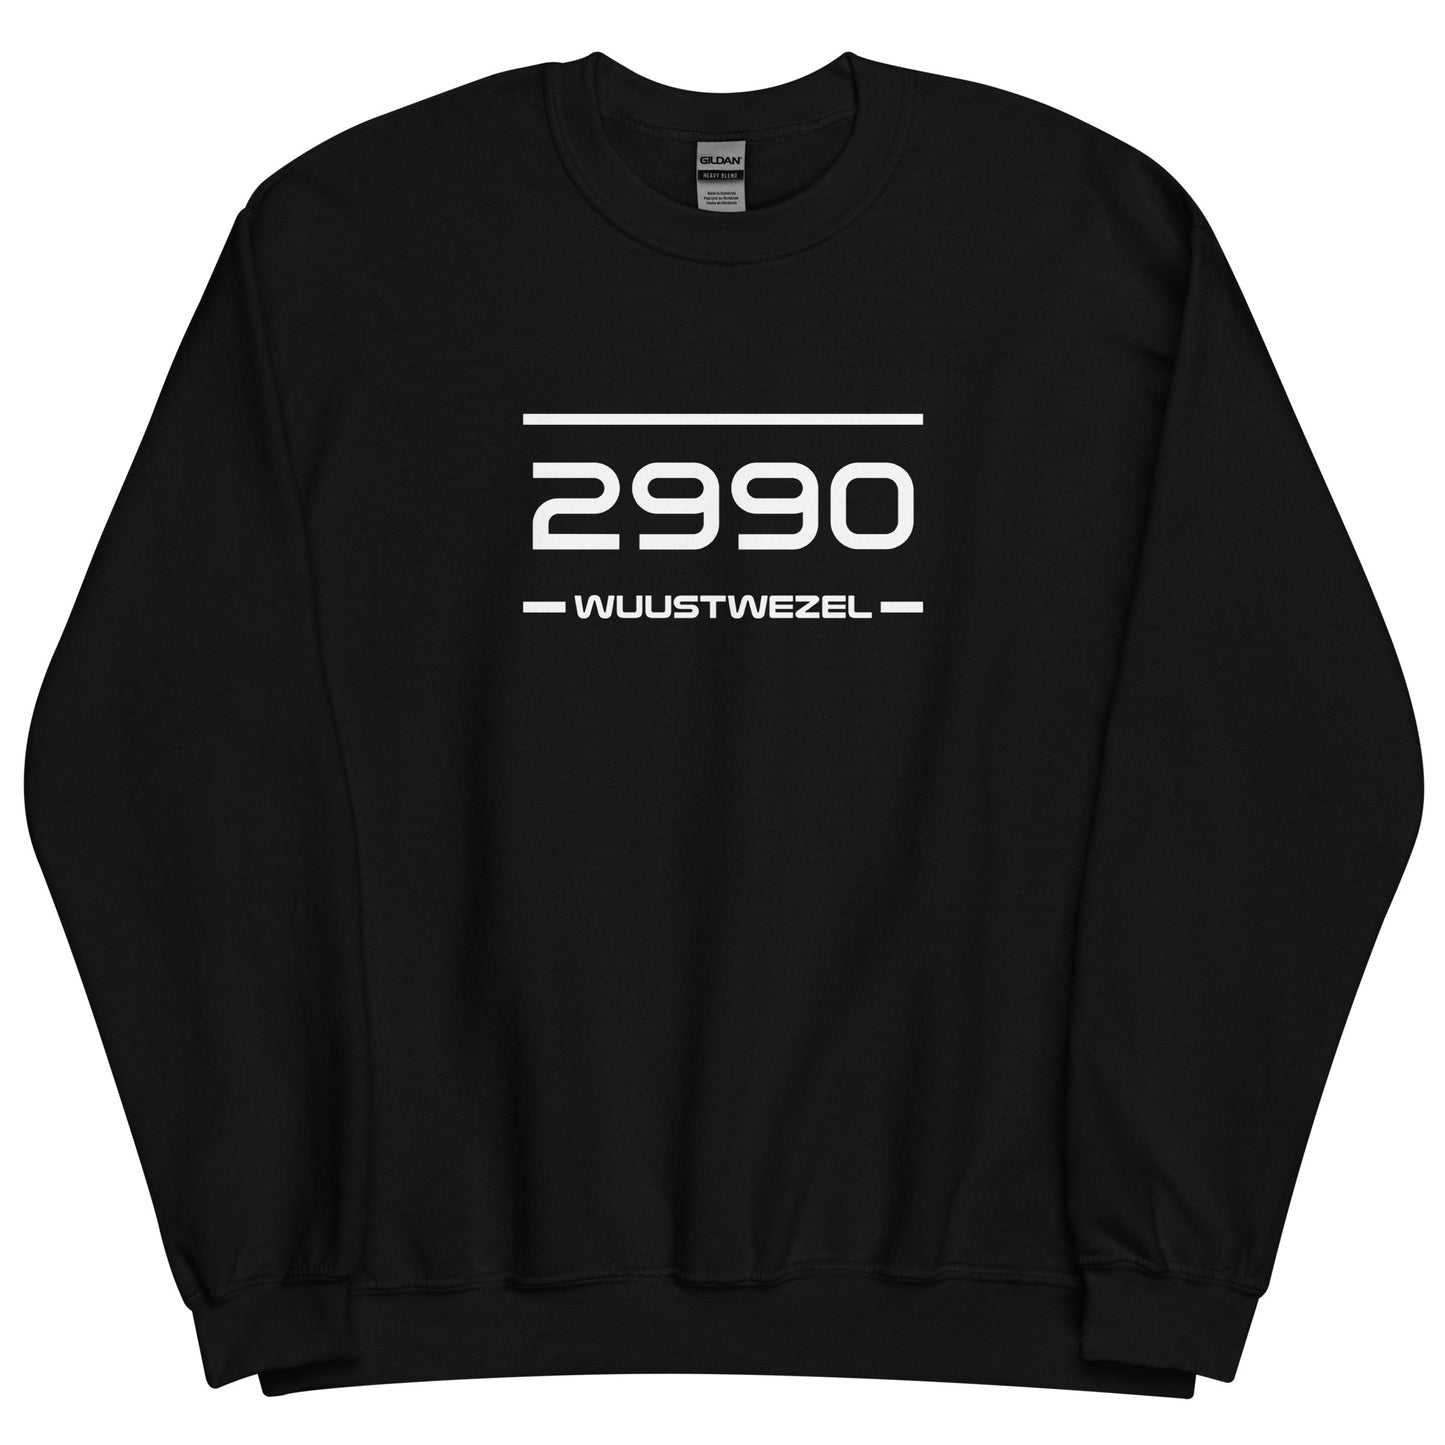 Sweater - 2990 - Wuustwezel (M/V)